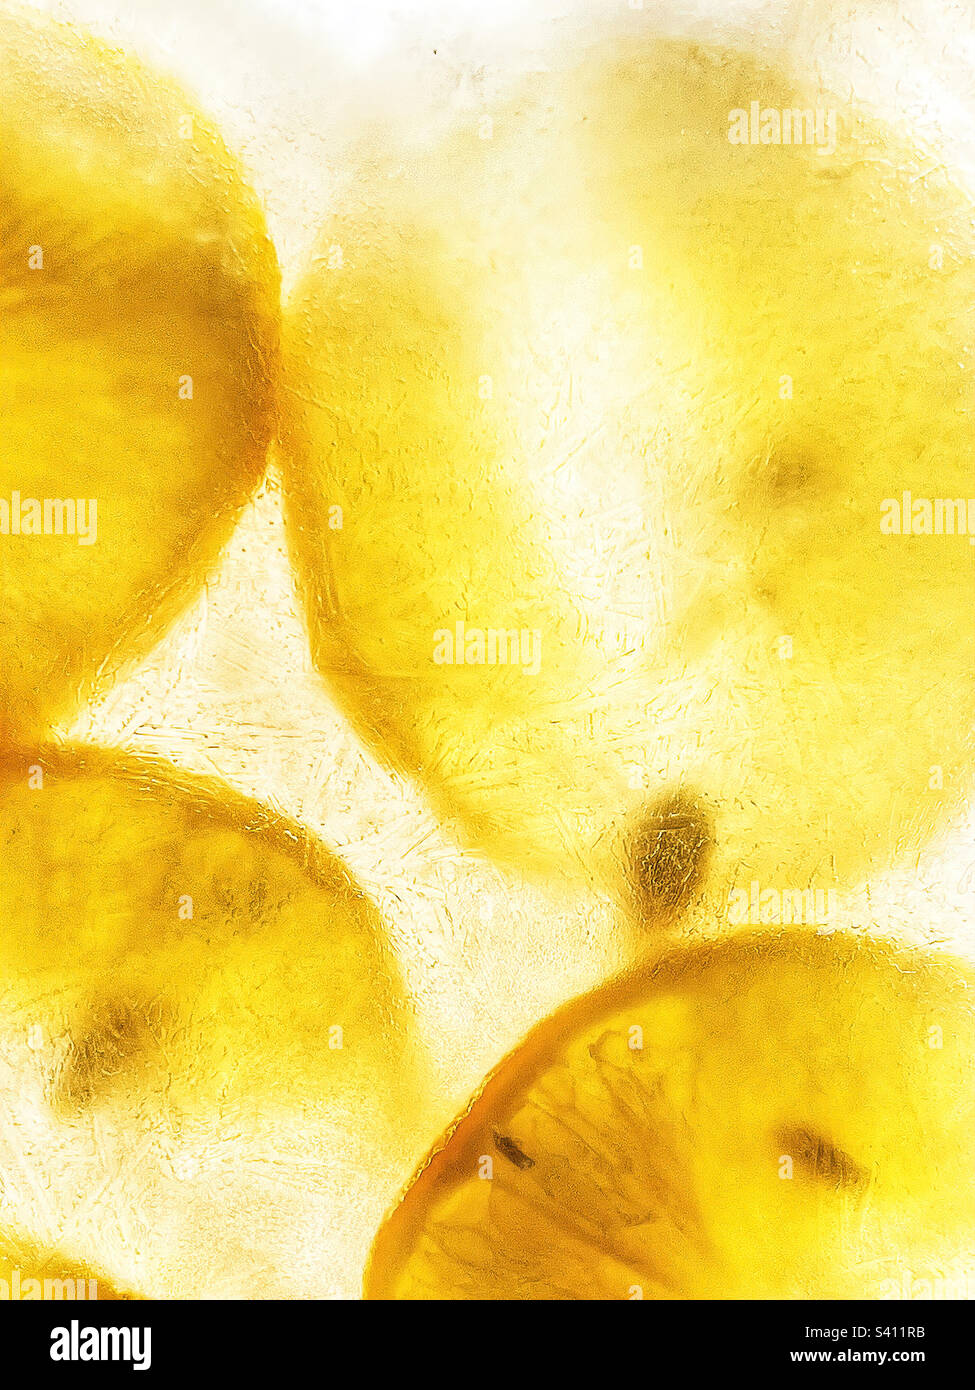 Estratto di limoni congelati in ghiaccio. Foto Stock